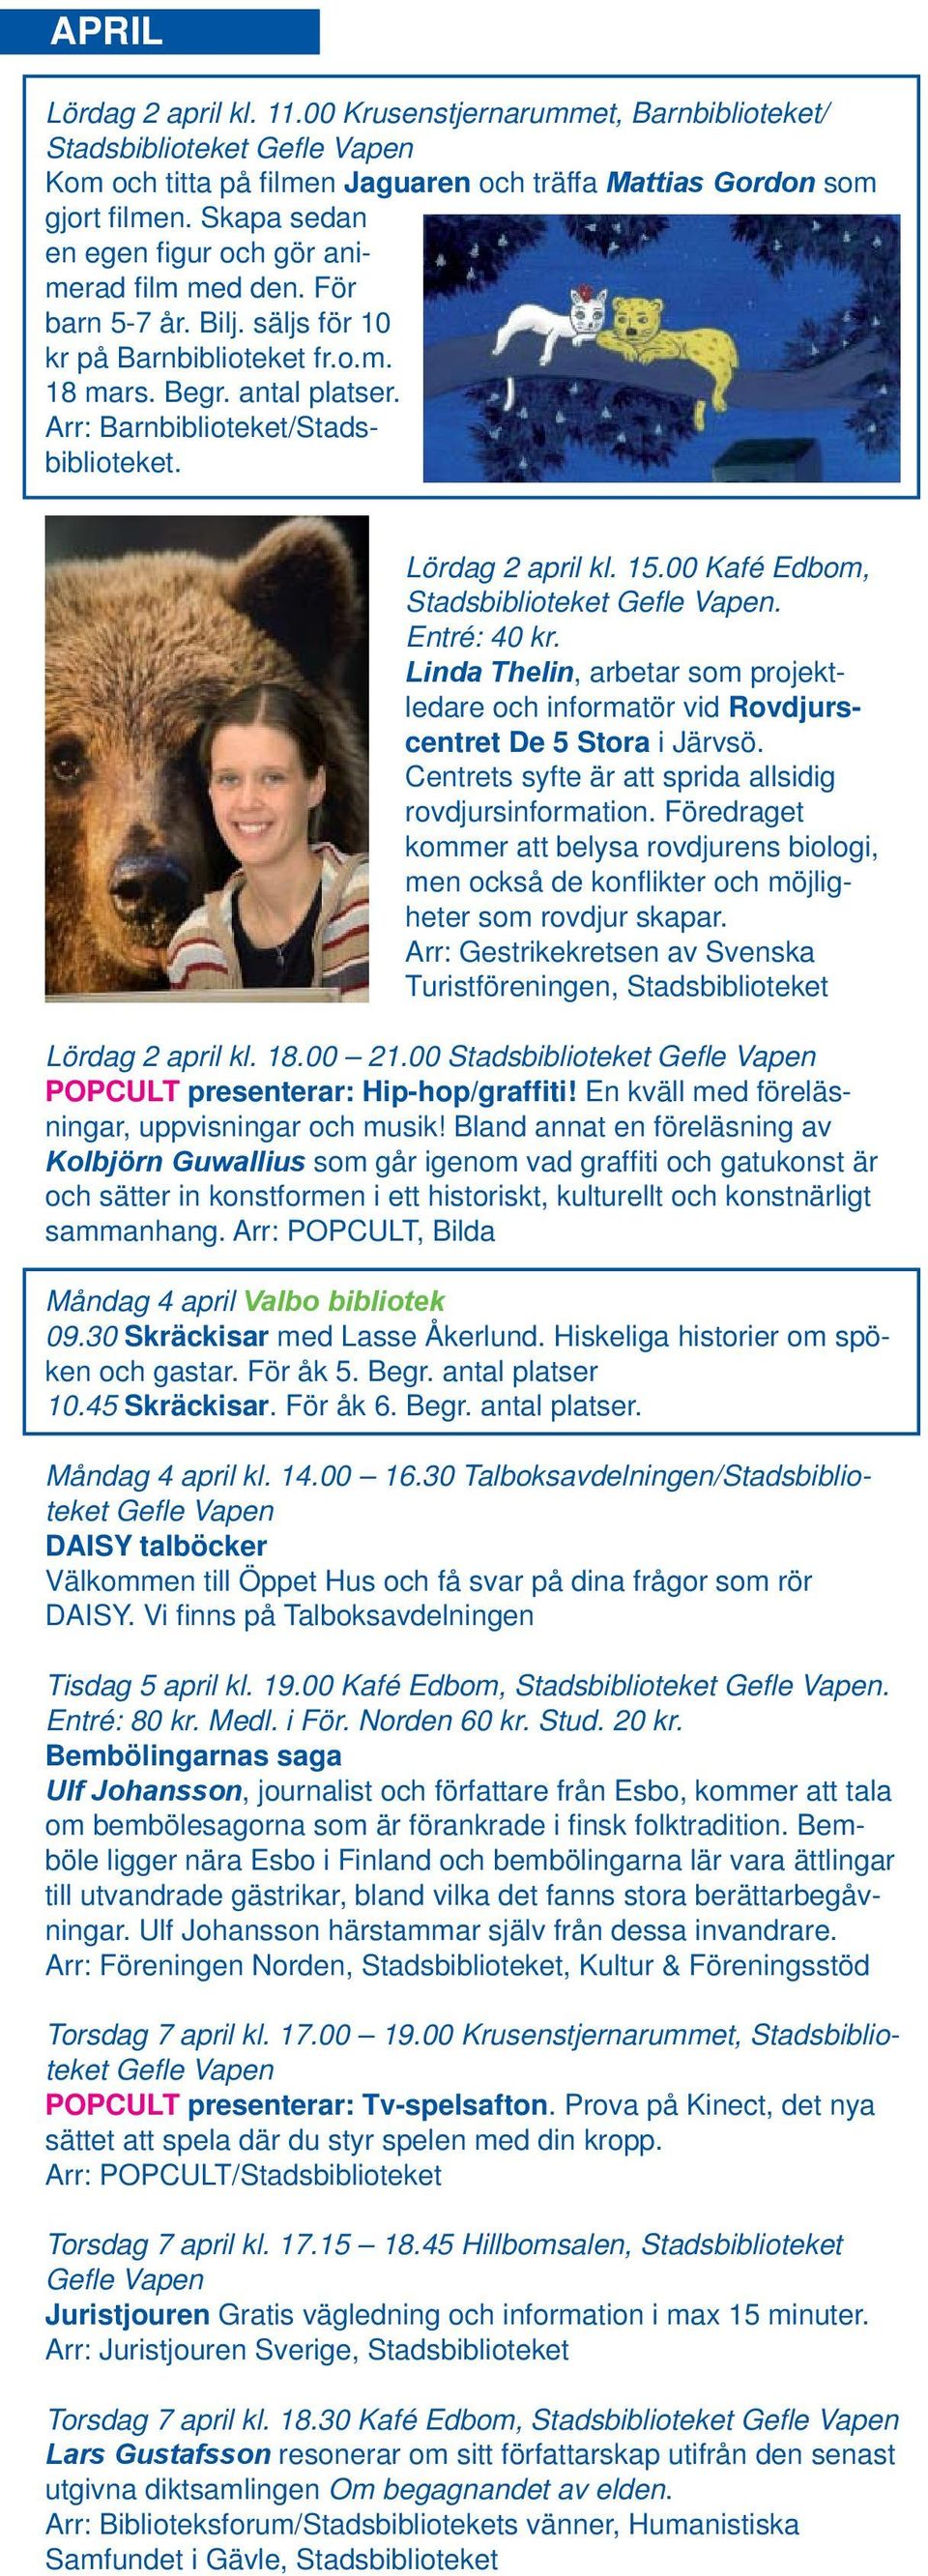 Lördag 2 april kl. 15.00 Kafé Edbom, Stadsbiblioteket. Entré: 40 kr. Linda Thelin, arbetar som projektledare och informatör vid Rovdjurscentret De 5 Stora i Järvsö.